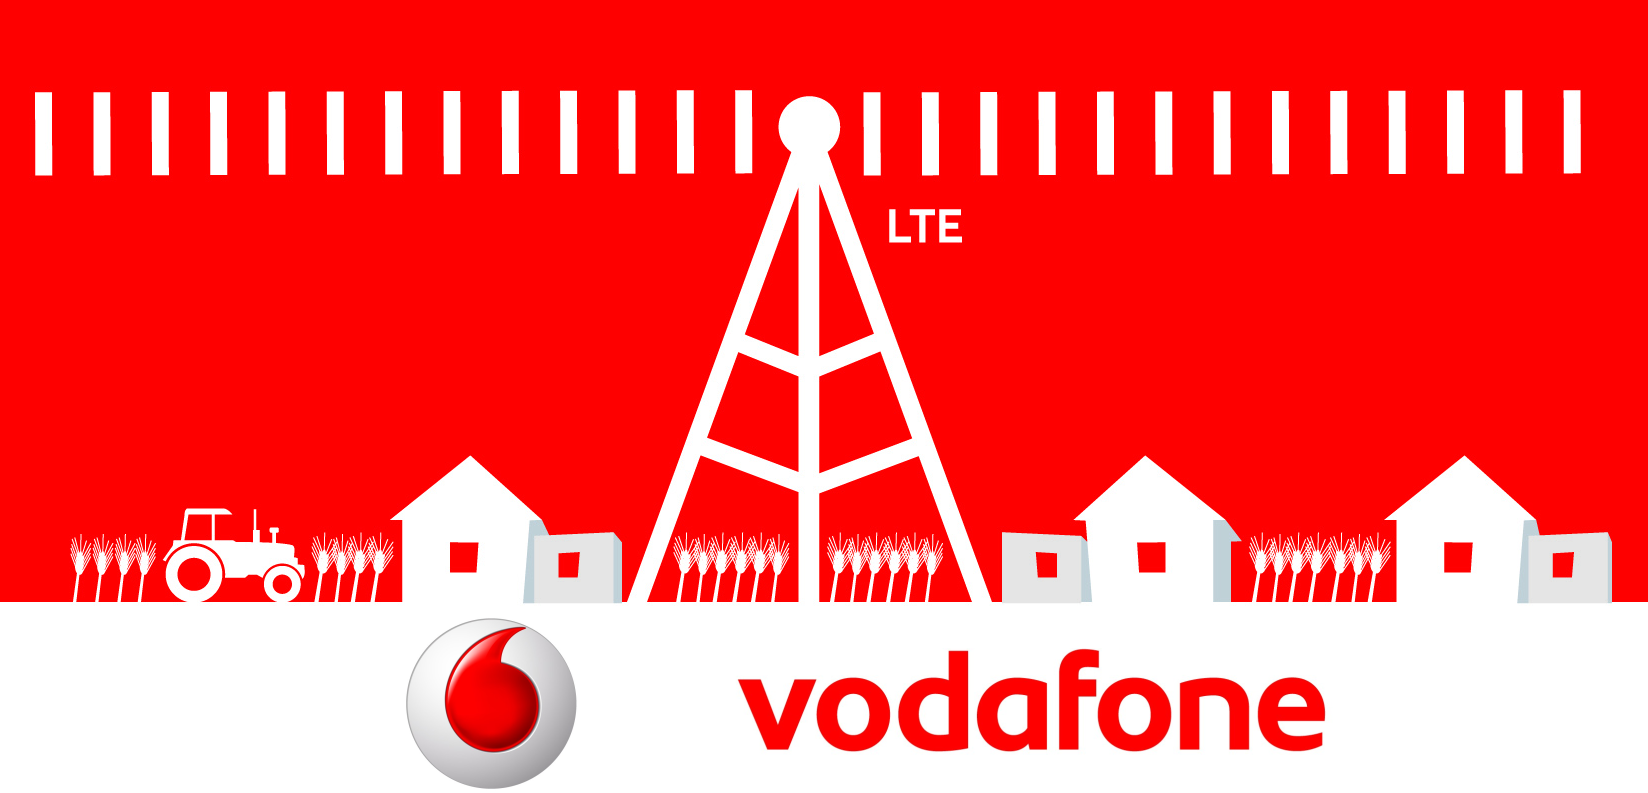 Vodafone startet EVS, WiFi-Calling und verbessert VoLTE